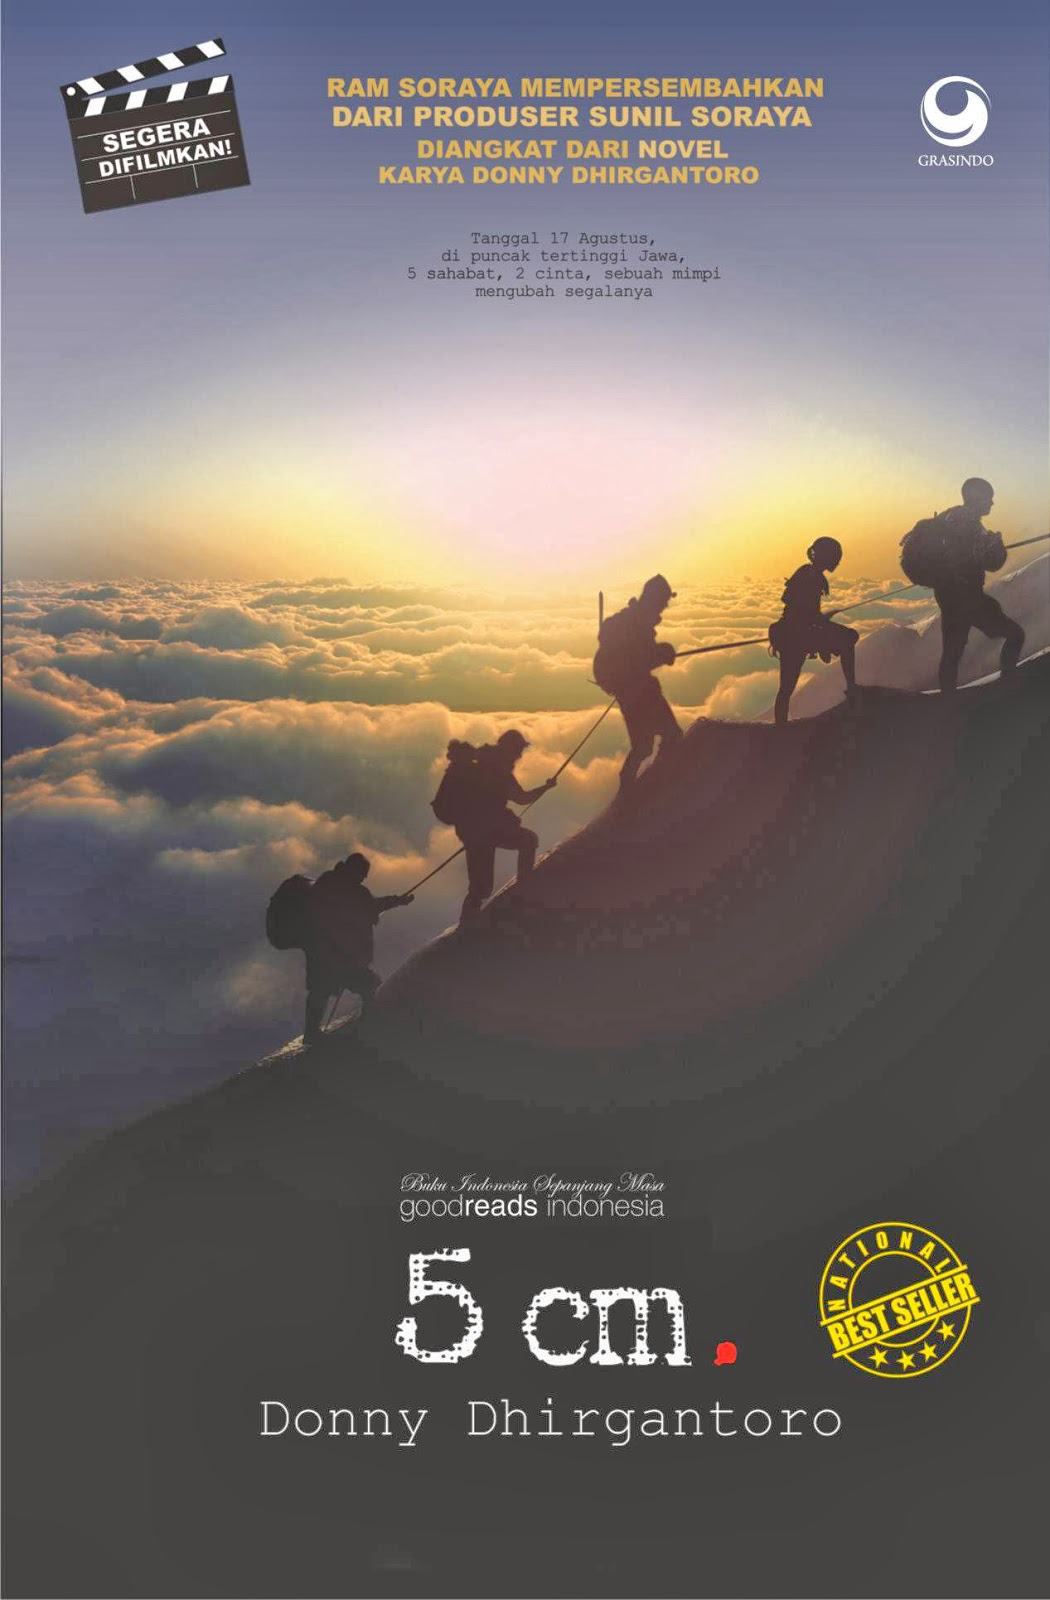 Film 5 Cm, Sebuah Inspirasi dan Cerita Tentang Keindahan 